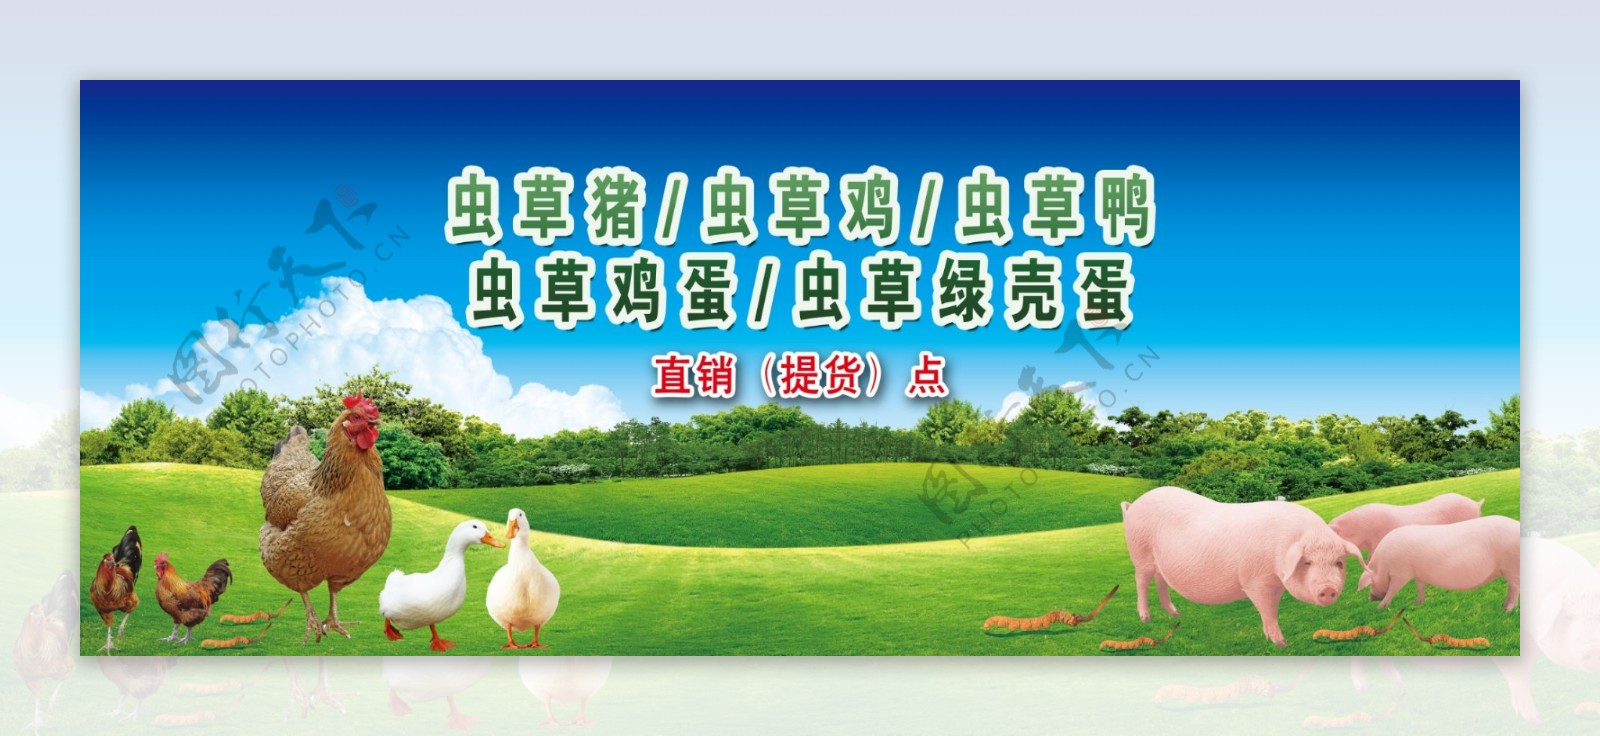 生态环保虫草鸡海报画面